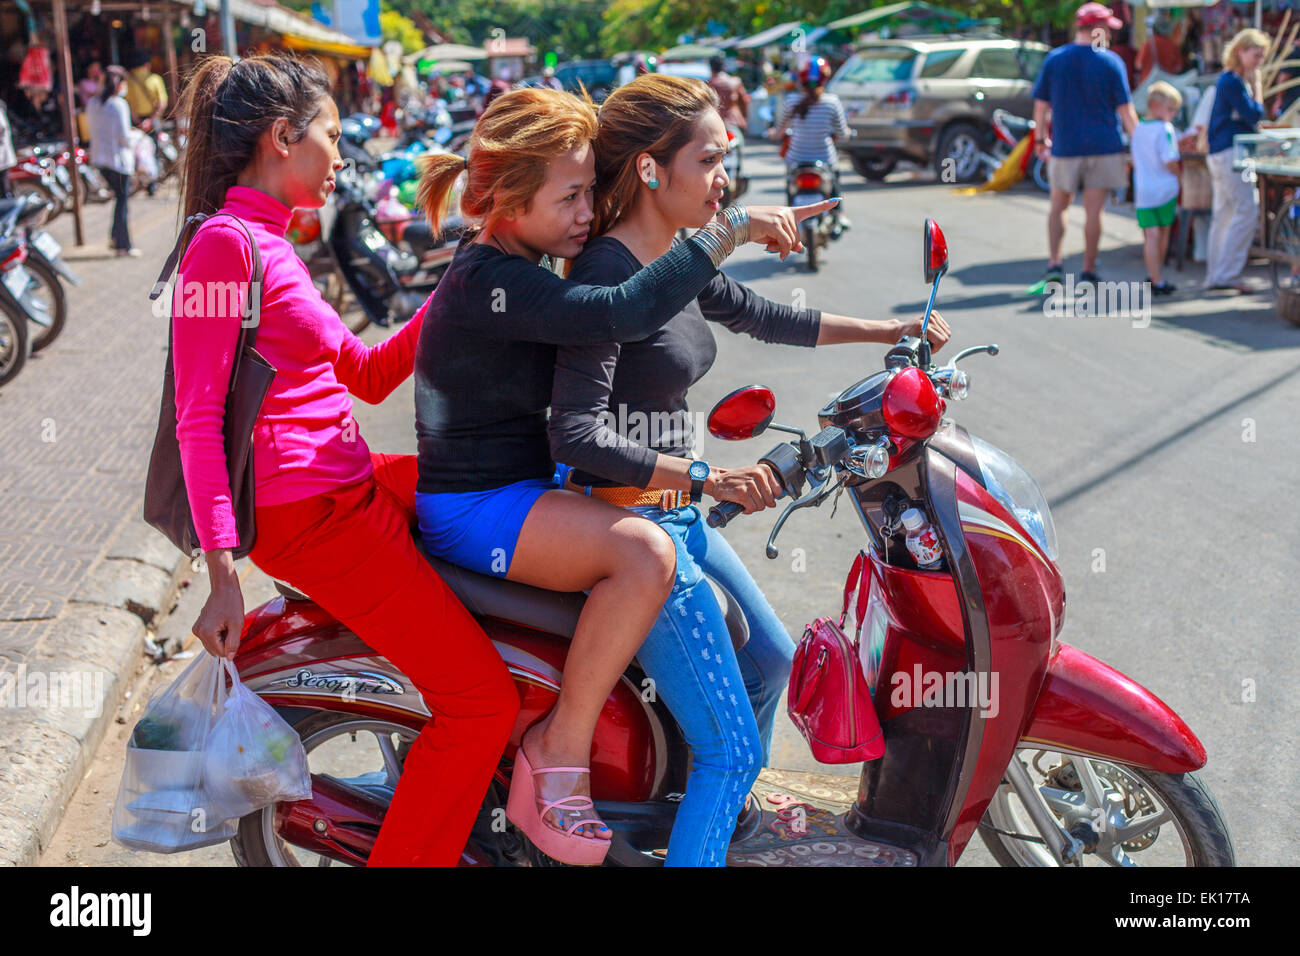 Drei junge kambodschanische Mädchen auf einem moped Stockfoto